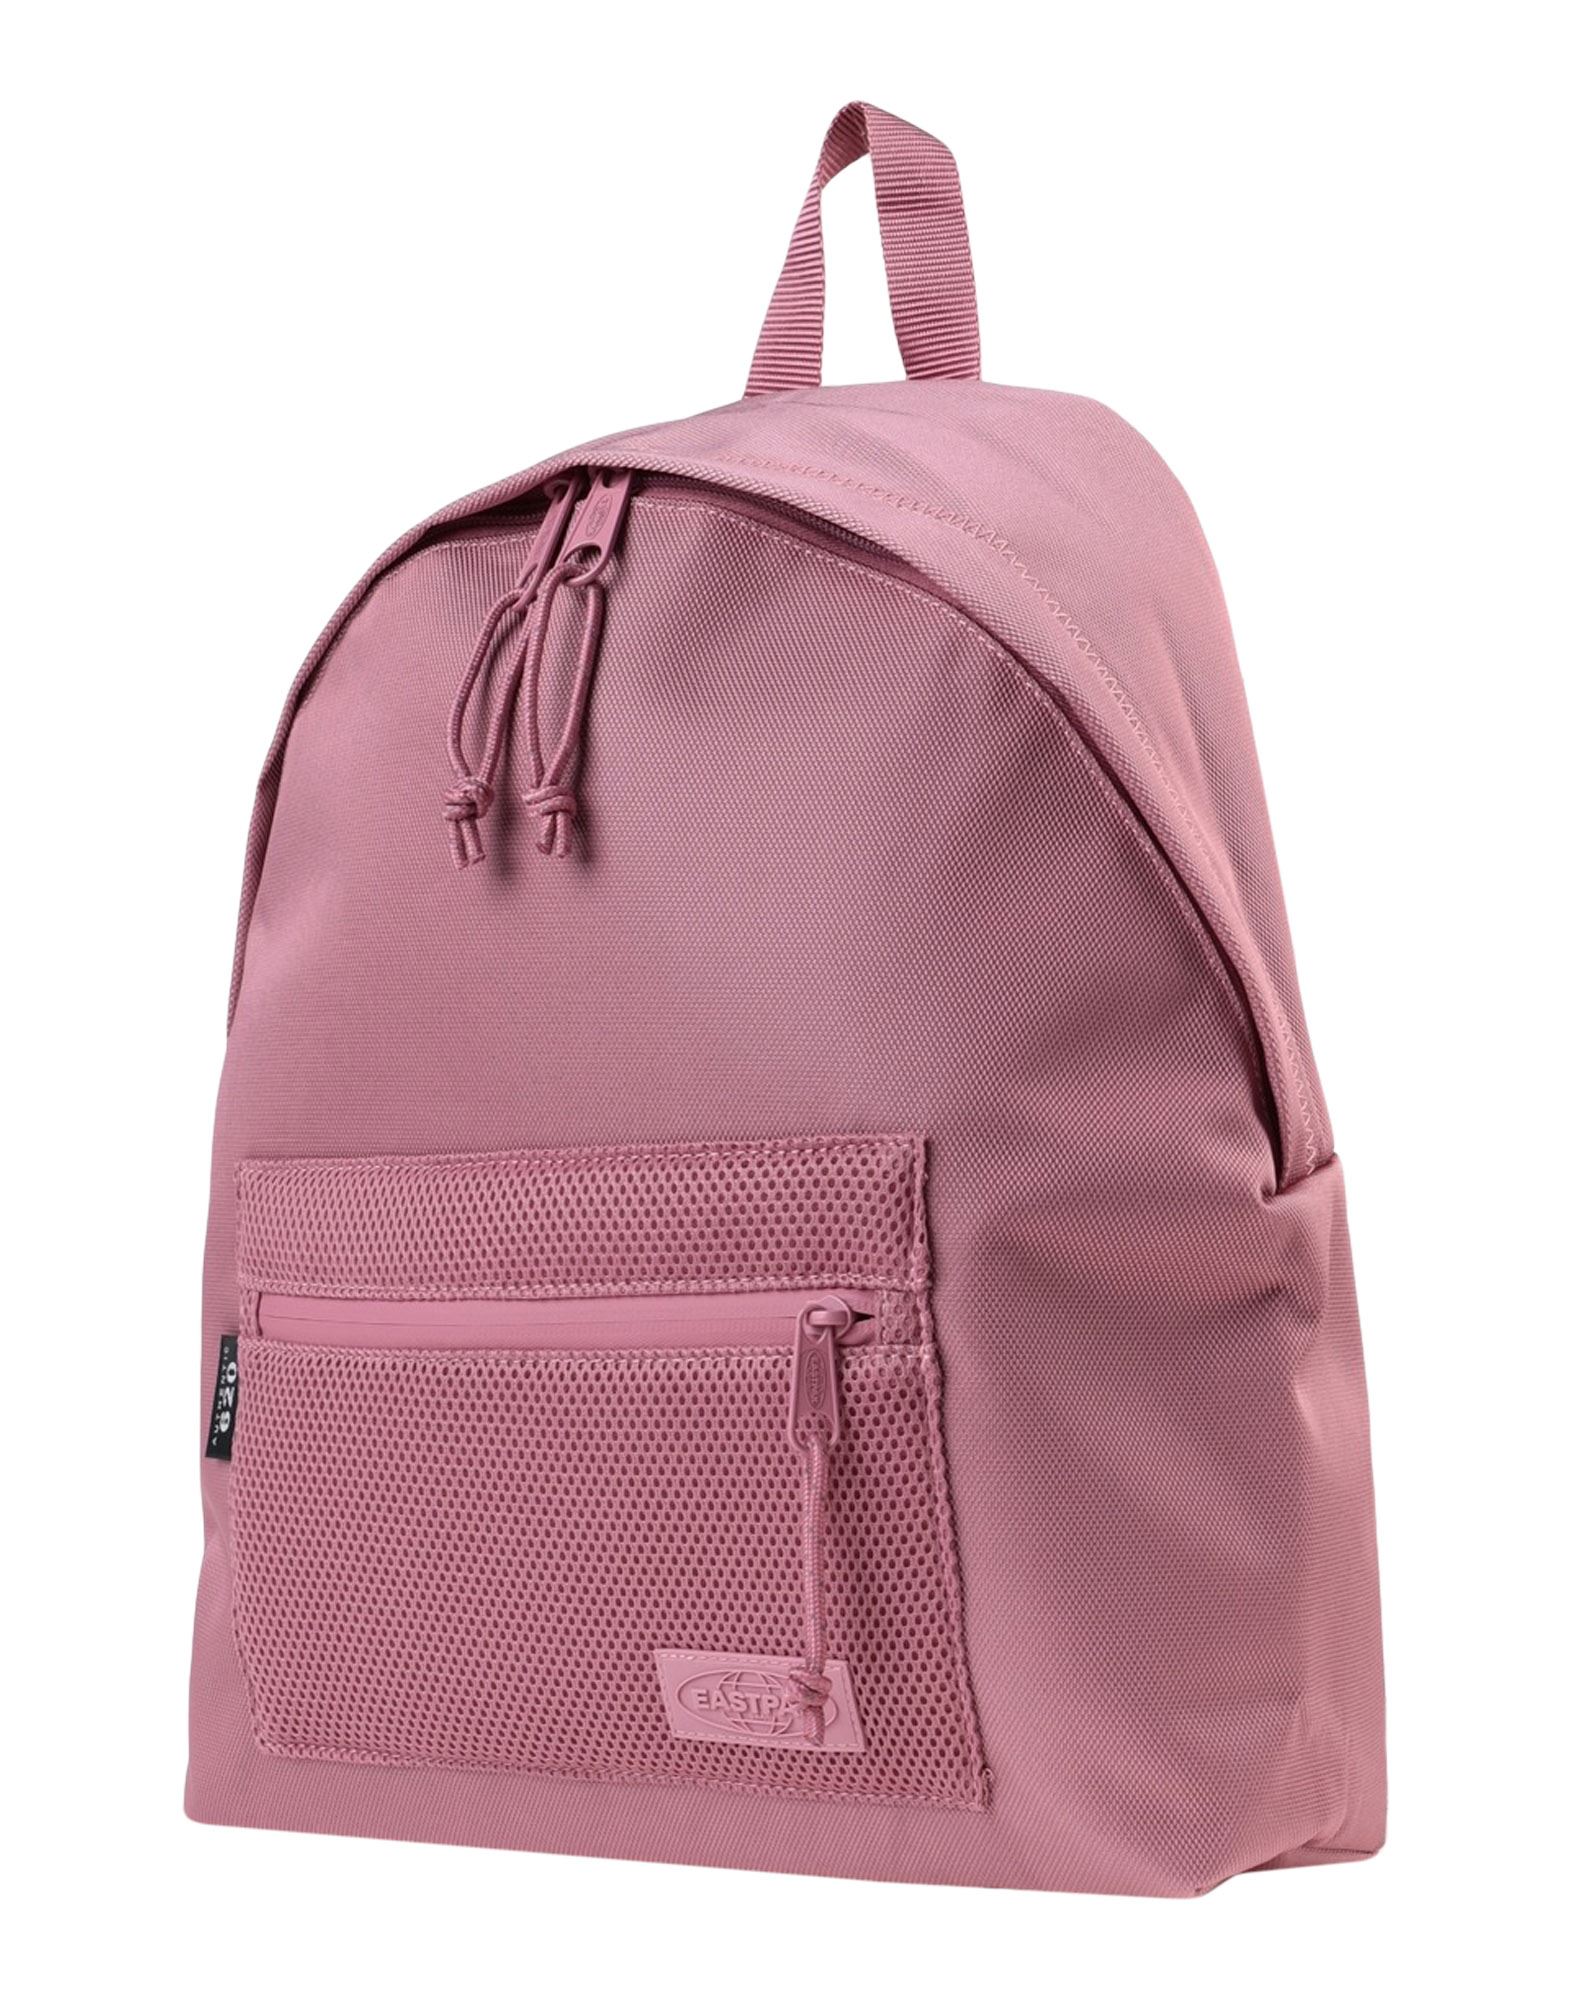 EASTPAK Backpacks & Fanny packs - Item 45554617